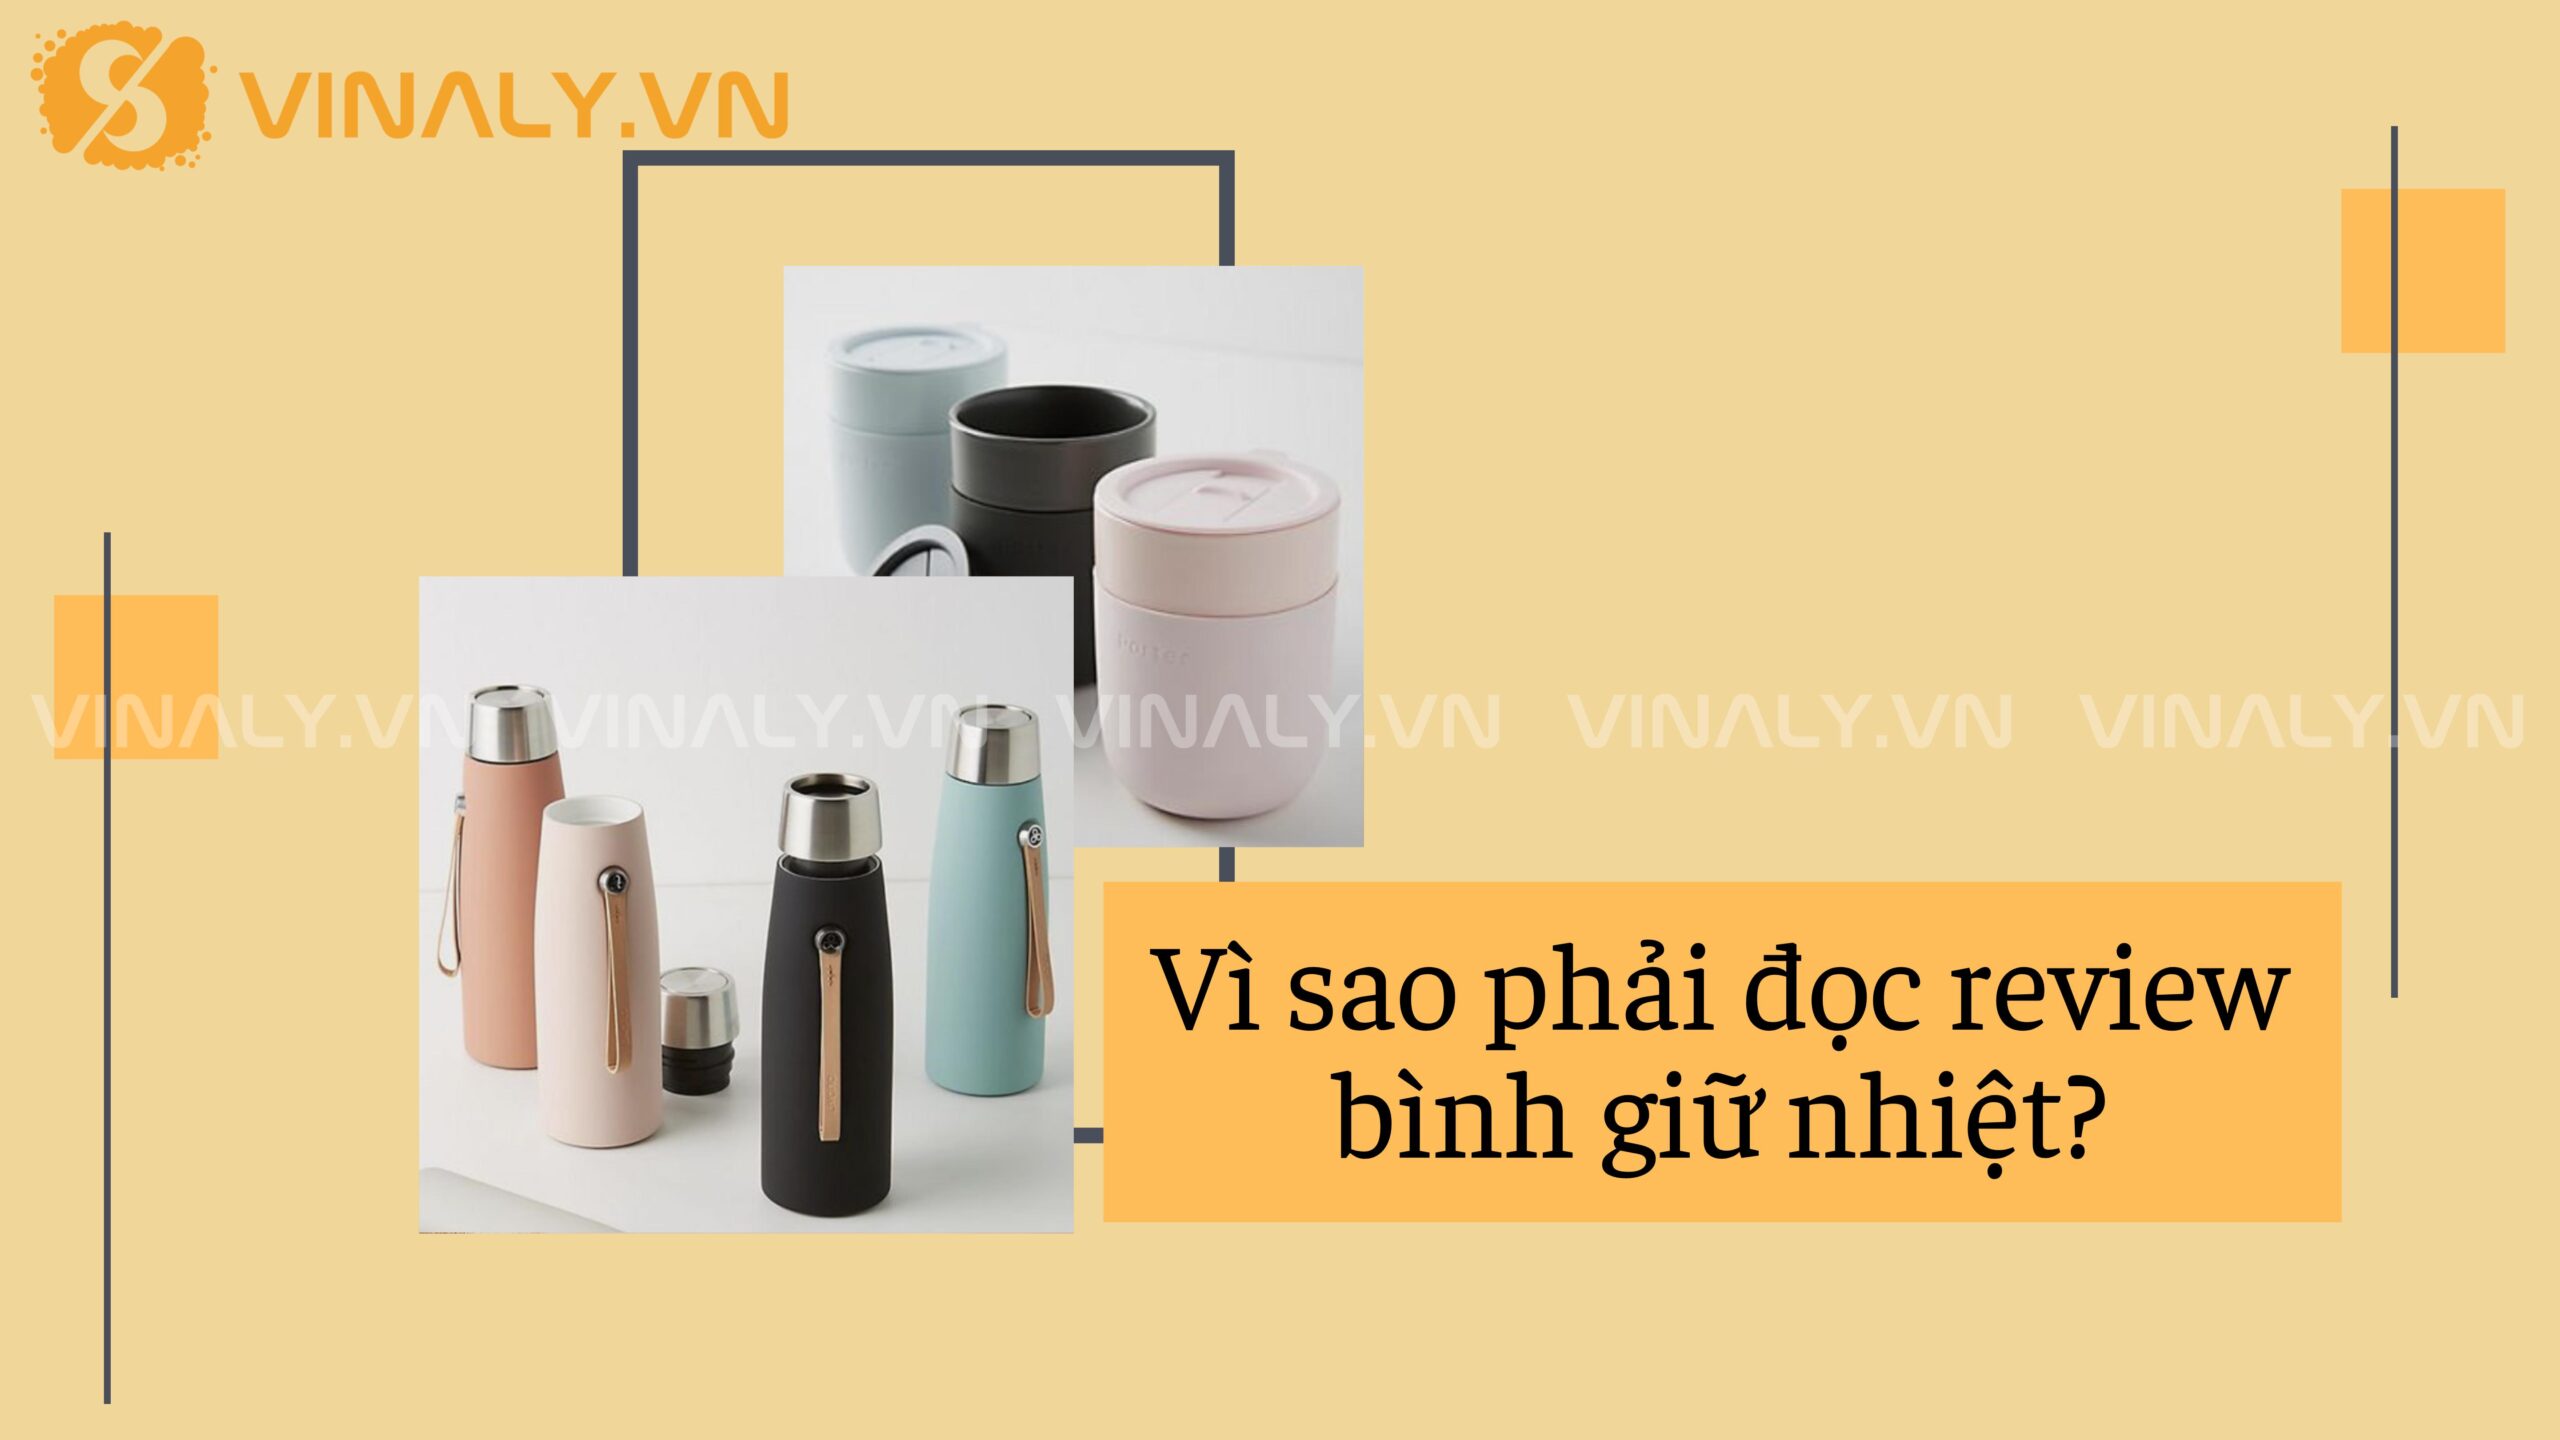 Review bình giữ nhiệt: Top 3 sản phẩm giữ nhiệt ưu Việt